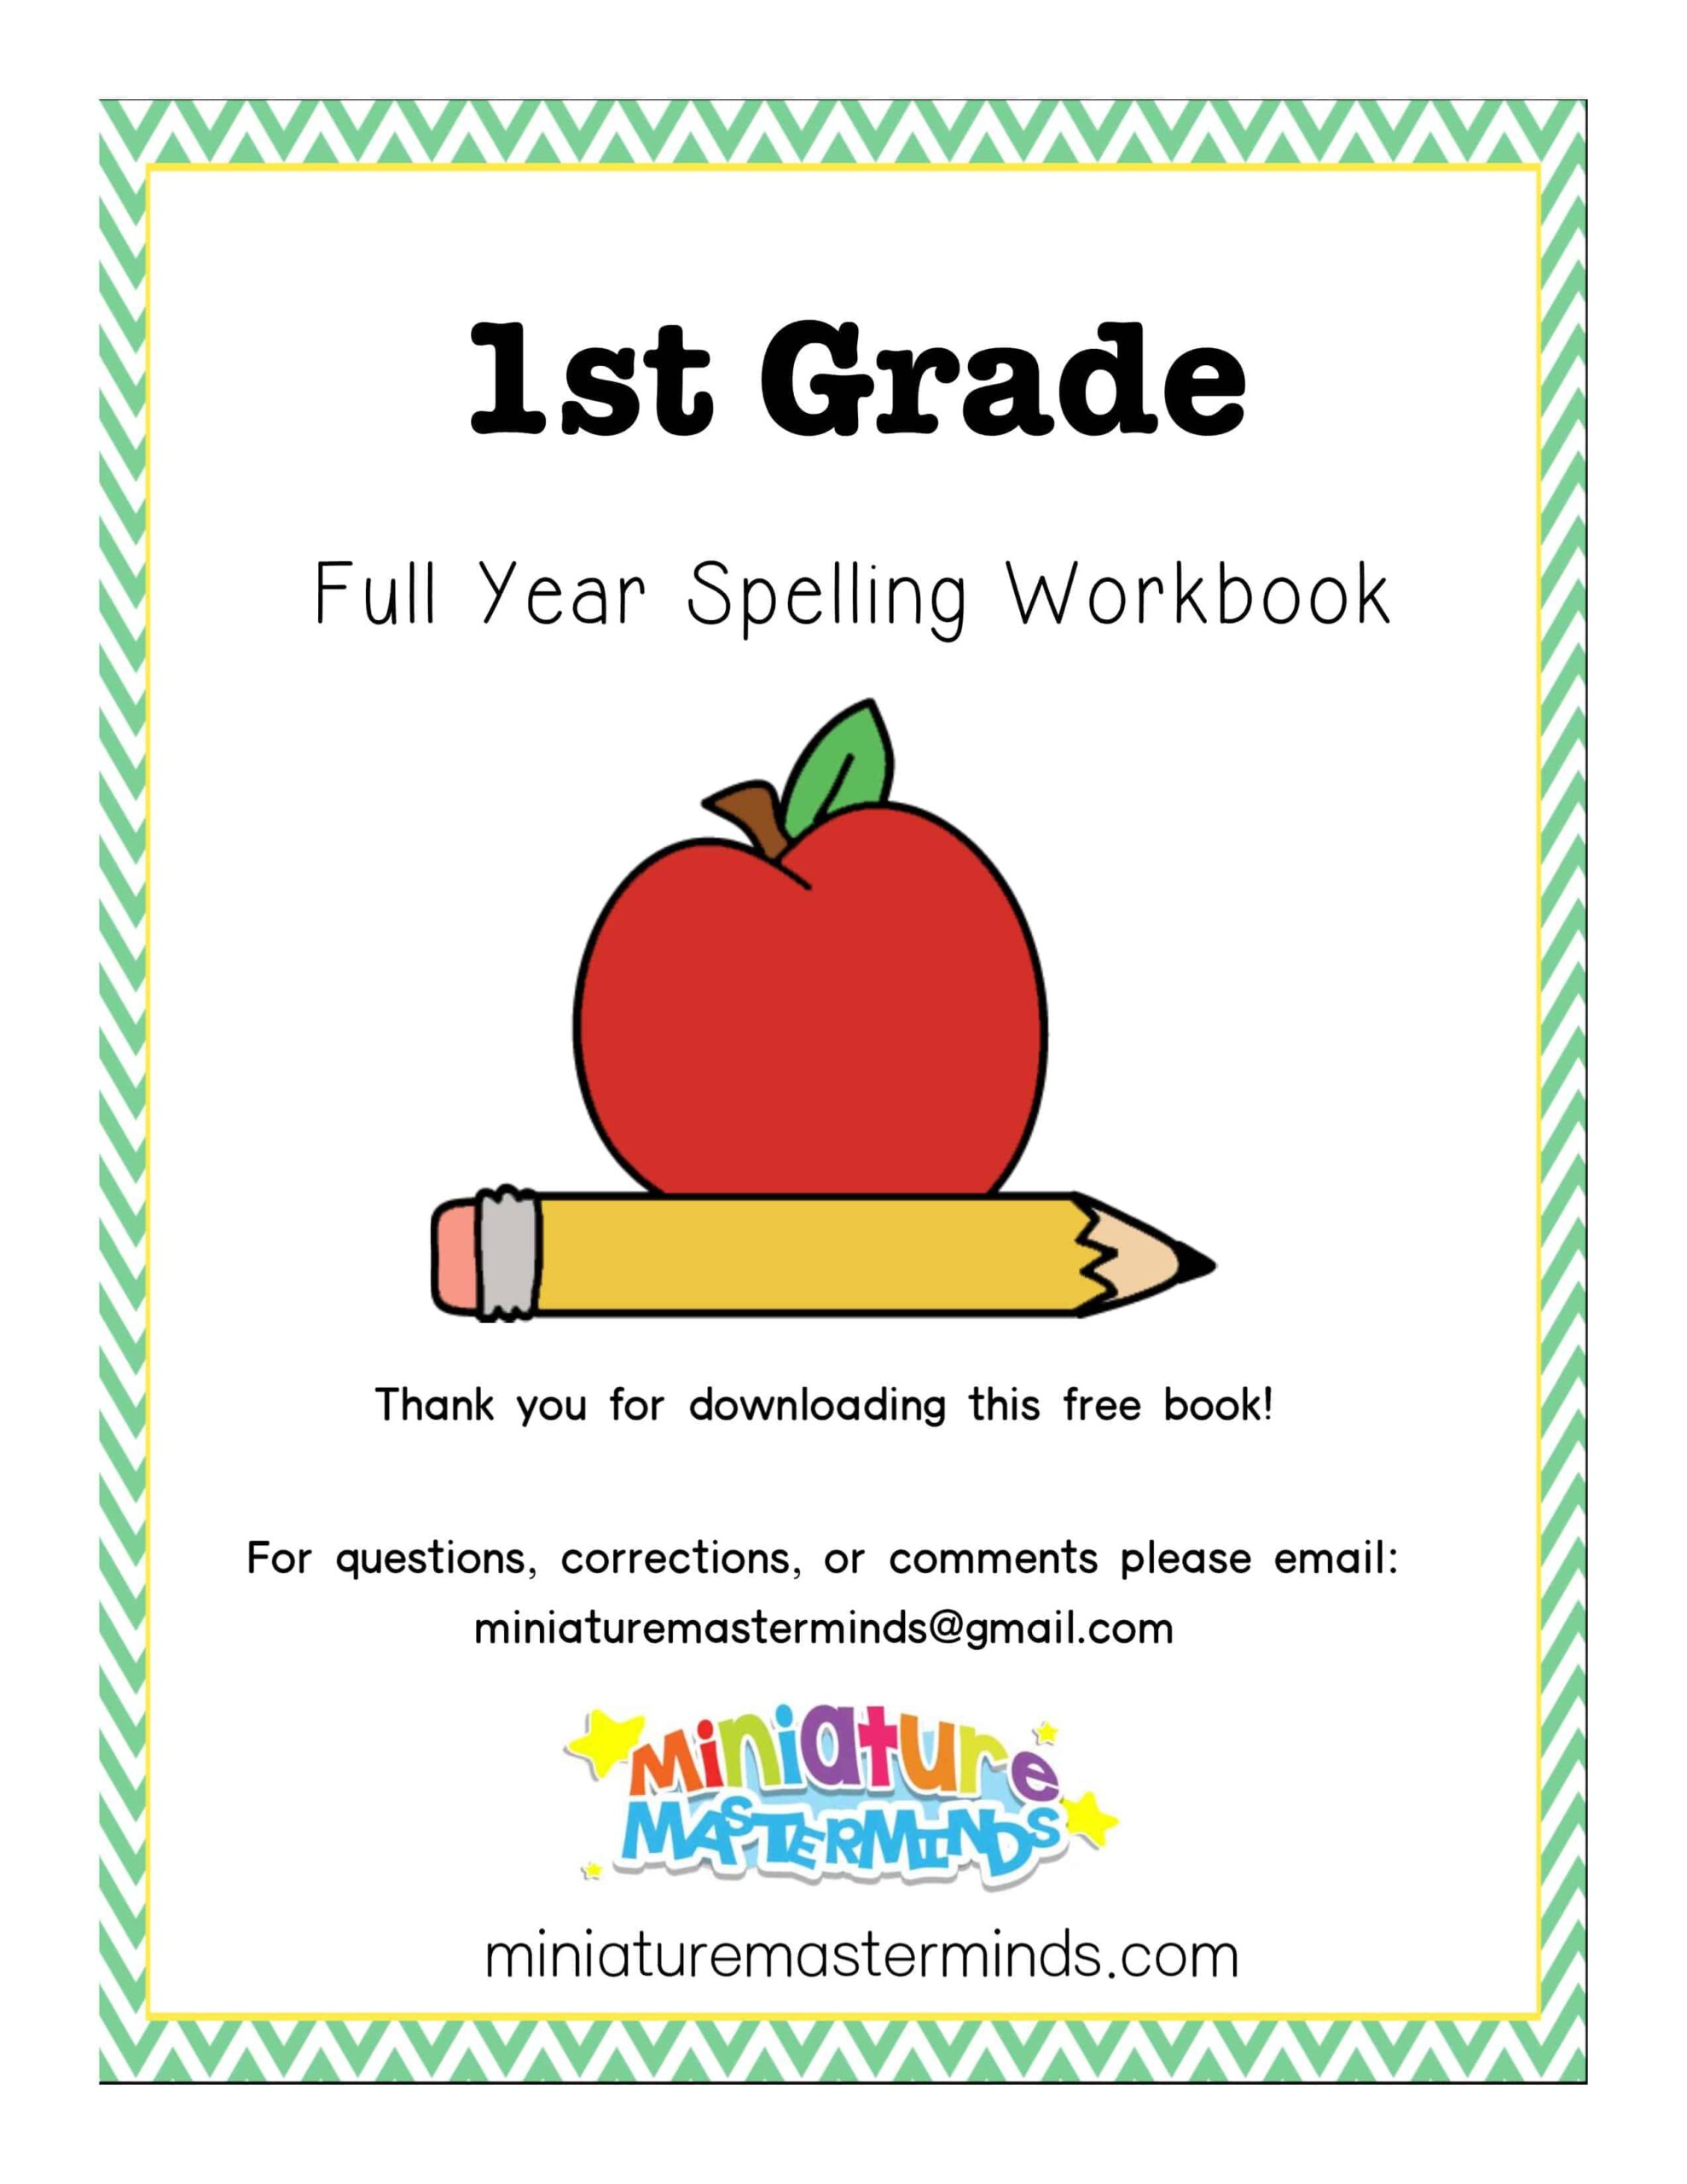 مذكرة Full Year Spelling Workbook اللغة الإنجليزية الصف الأول 